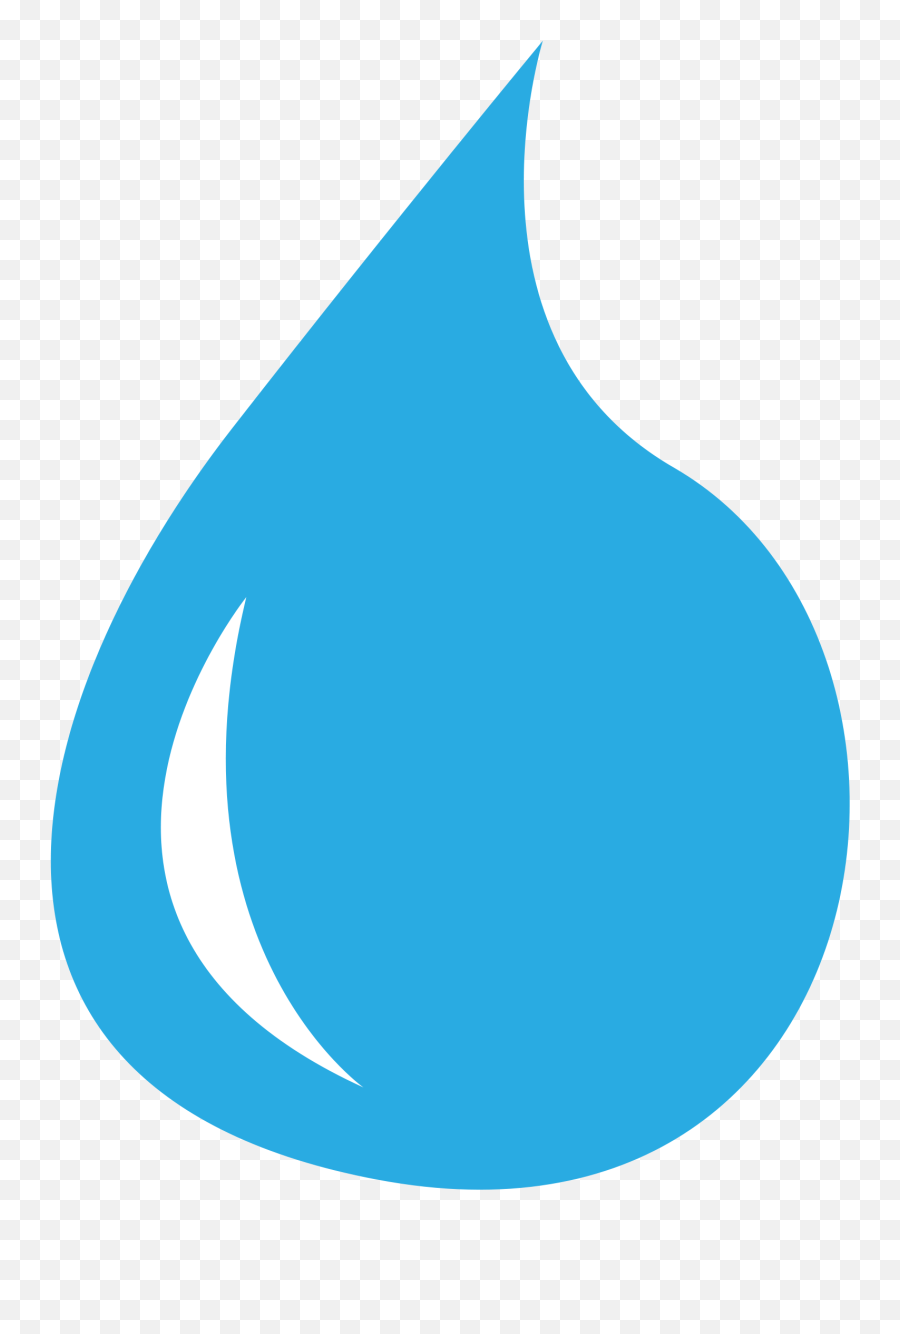 Water Droplet Clipart - Tear Drop Clipart Emoji,Facebook Sweatdrop Emoticon